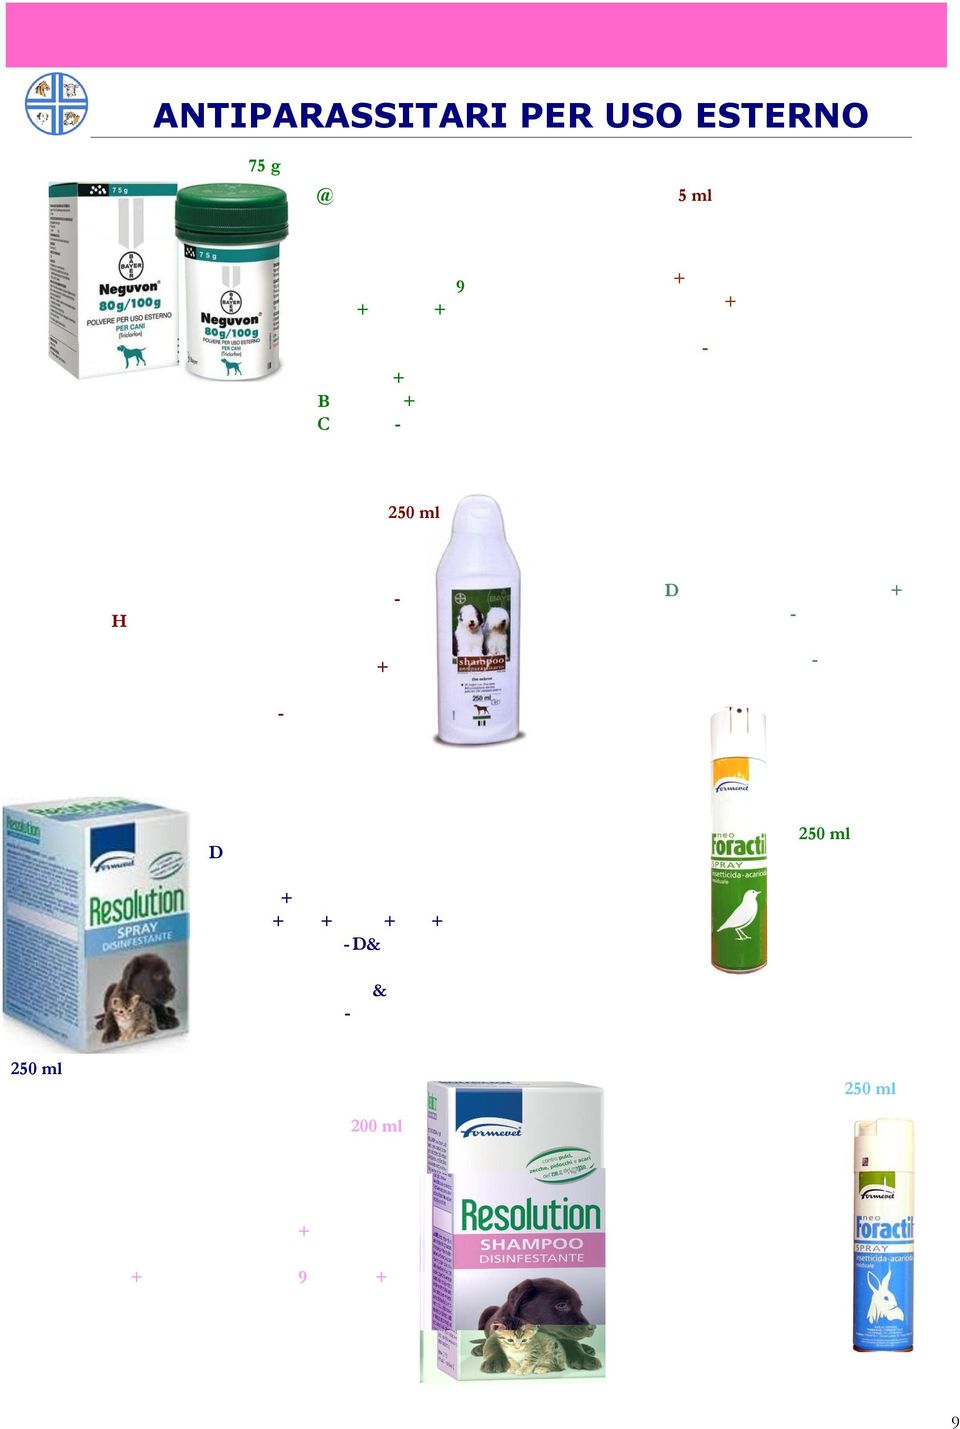 250 ml Shampoo antiparassitario utile per il trattamento di pulci ed altri parassiti esterni del cane quali zecche e tafani.